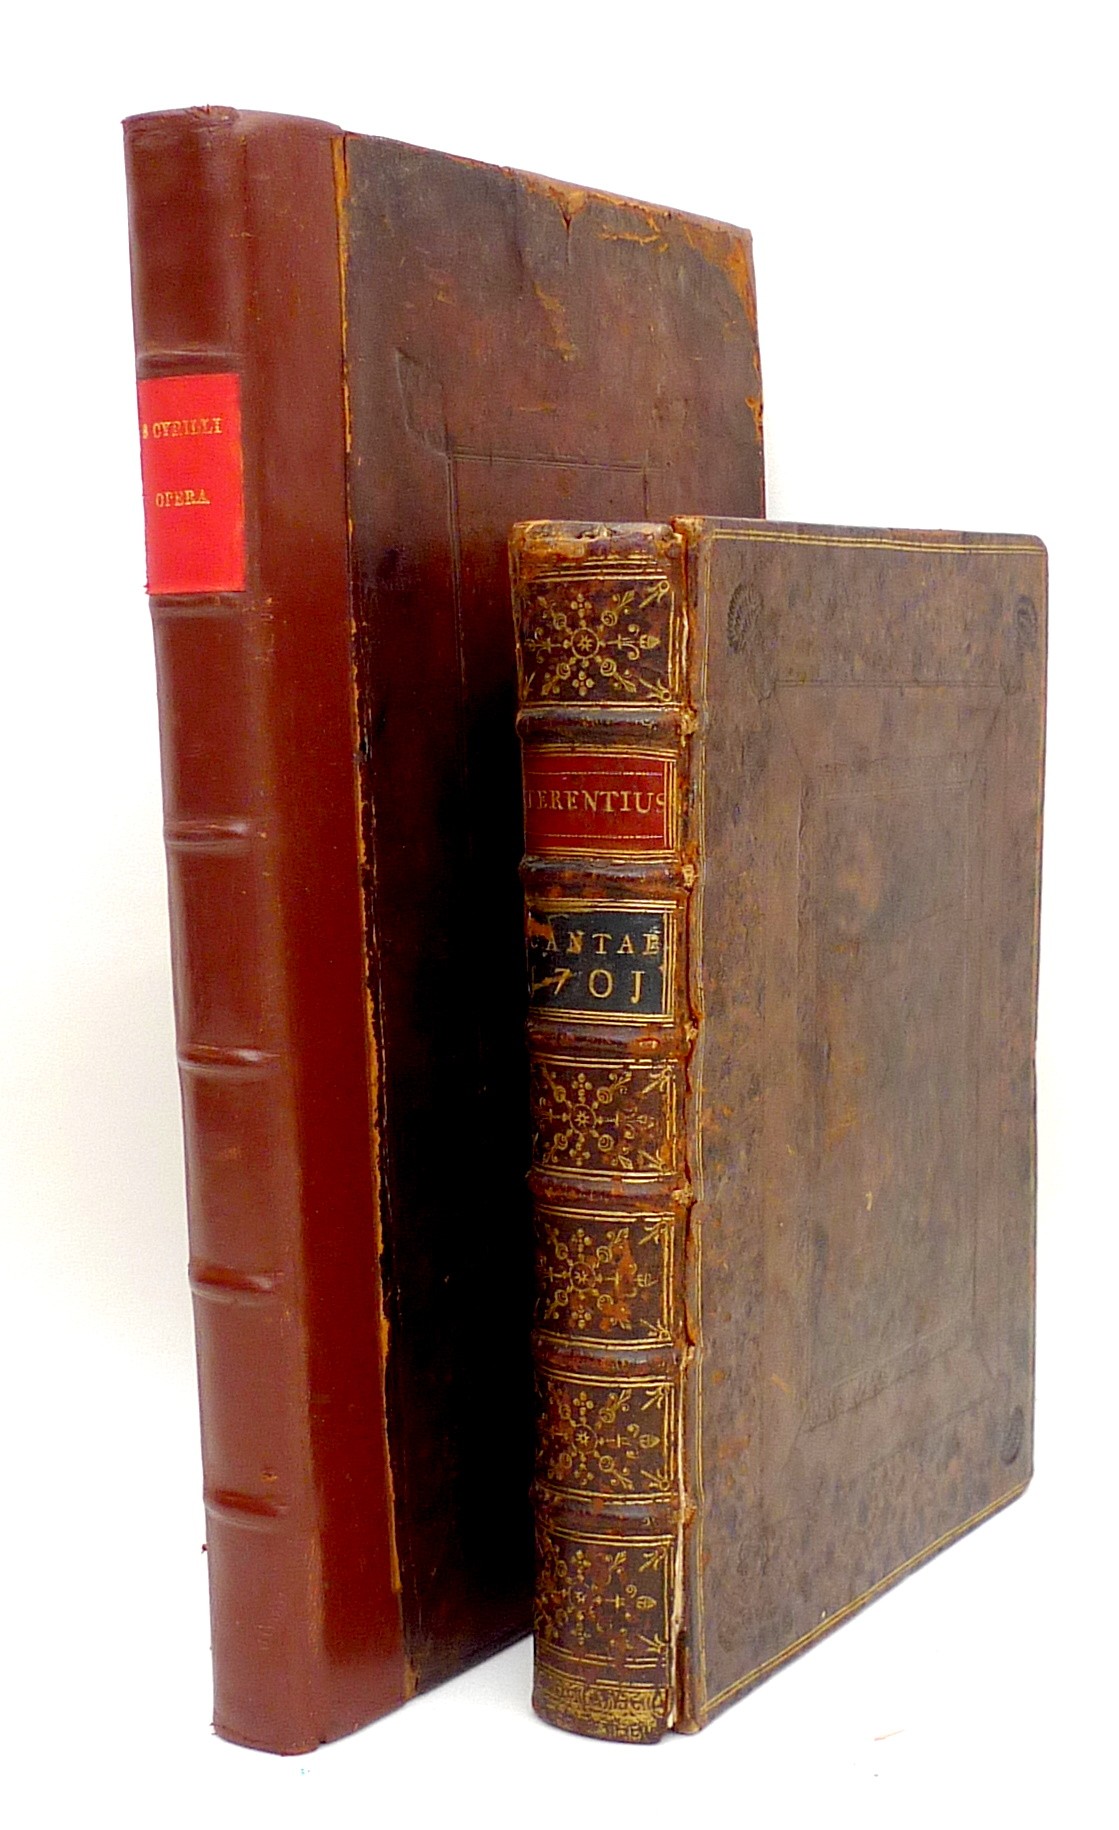 A 1701 volume of 'Publii Terentii Afri Comoediae', 'Ad Optimorum Exemplarium fidem recensitae,